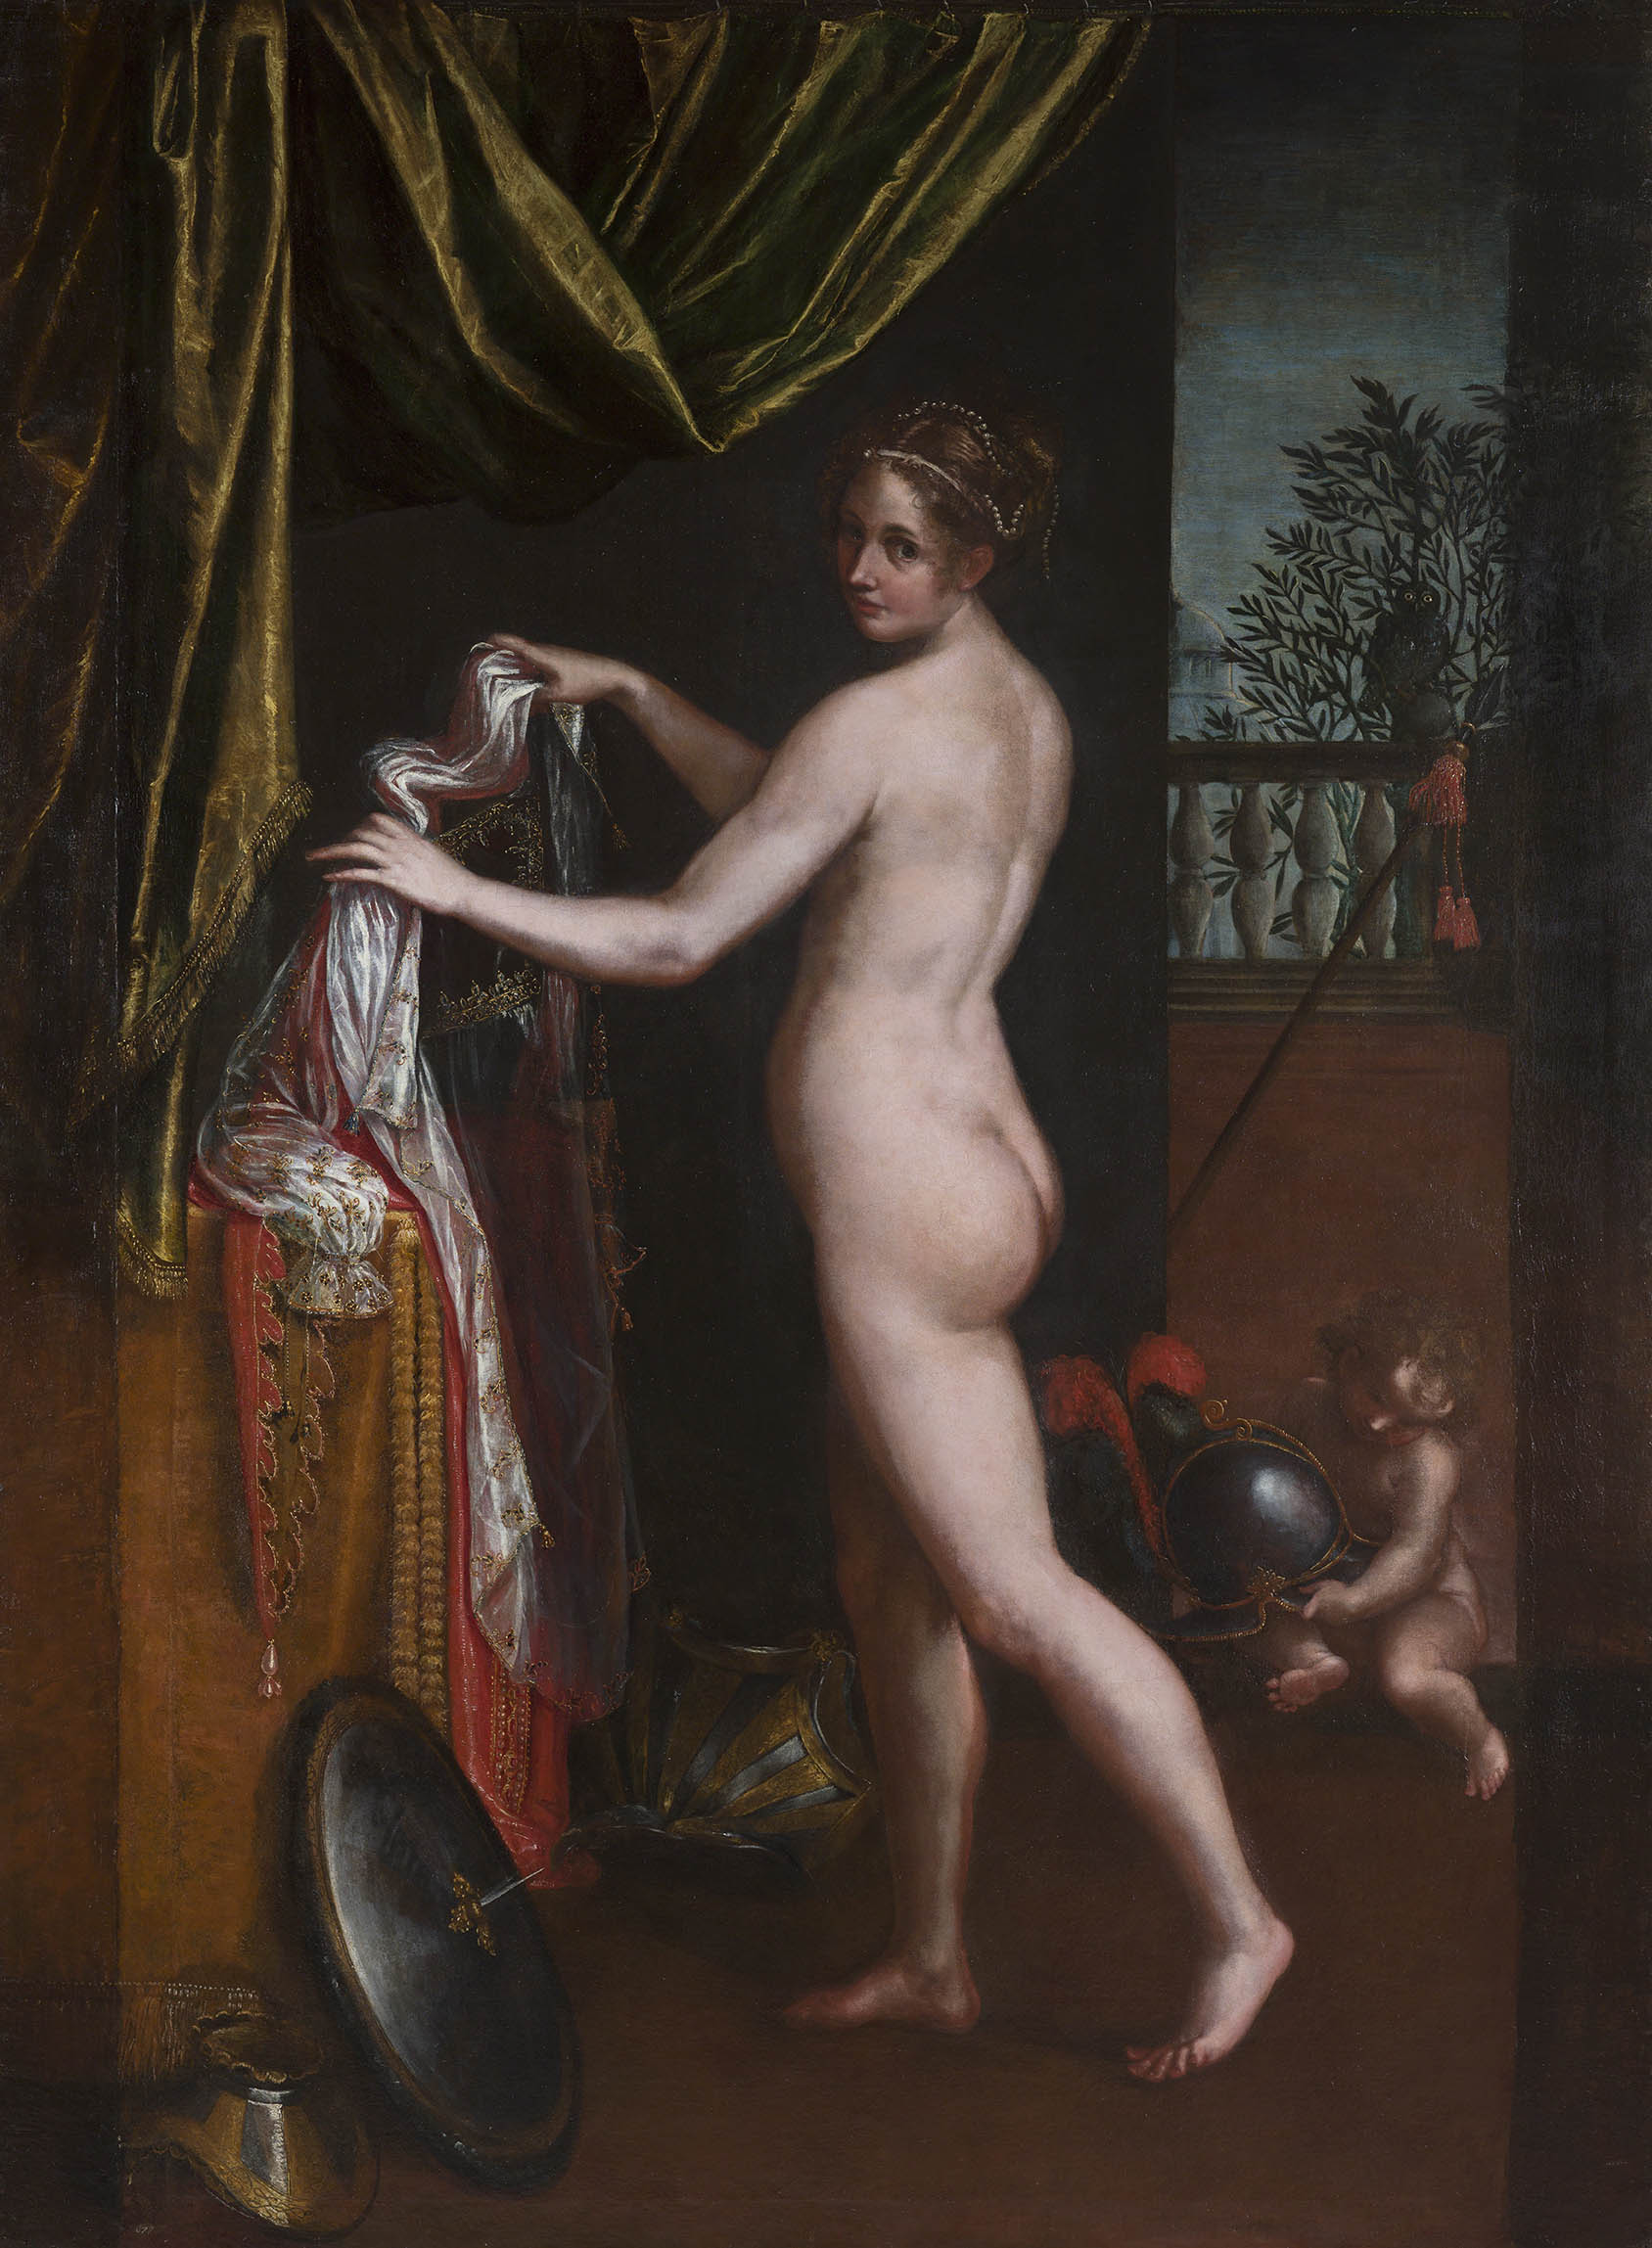 正在穿衣服的密涅瓦 by Lavinia Fontana - 1613 - 258 x 190 cm 